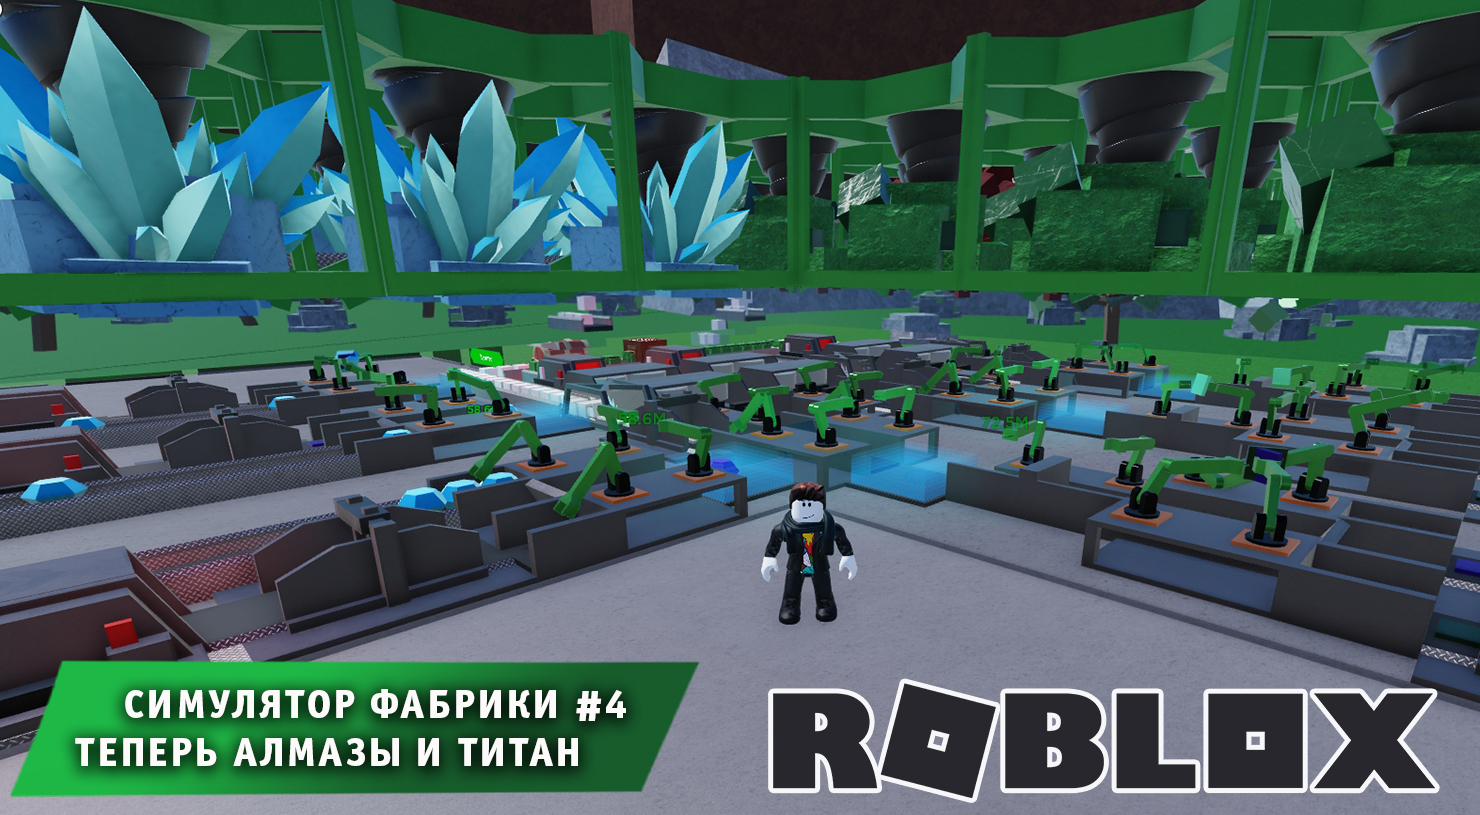 Роблокс Симулятор Фабрики ➤ Часть #4 ➤ Теперь алмазы и титан ➤ Игра Roblox Factory Simulator